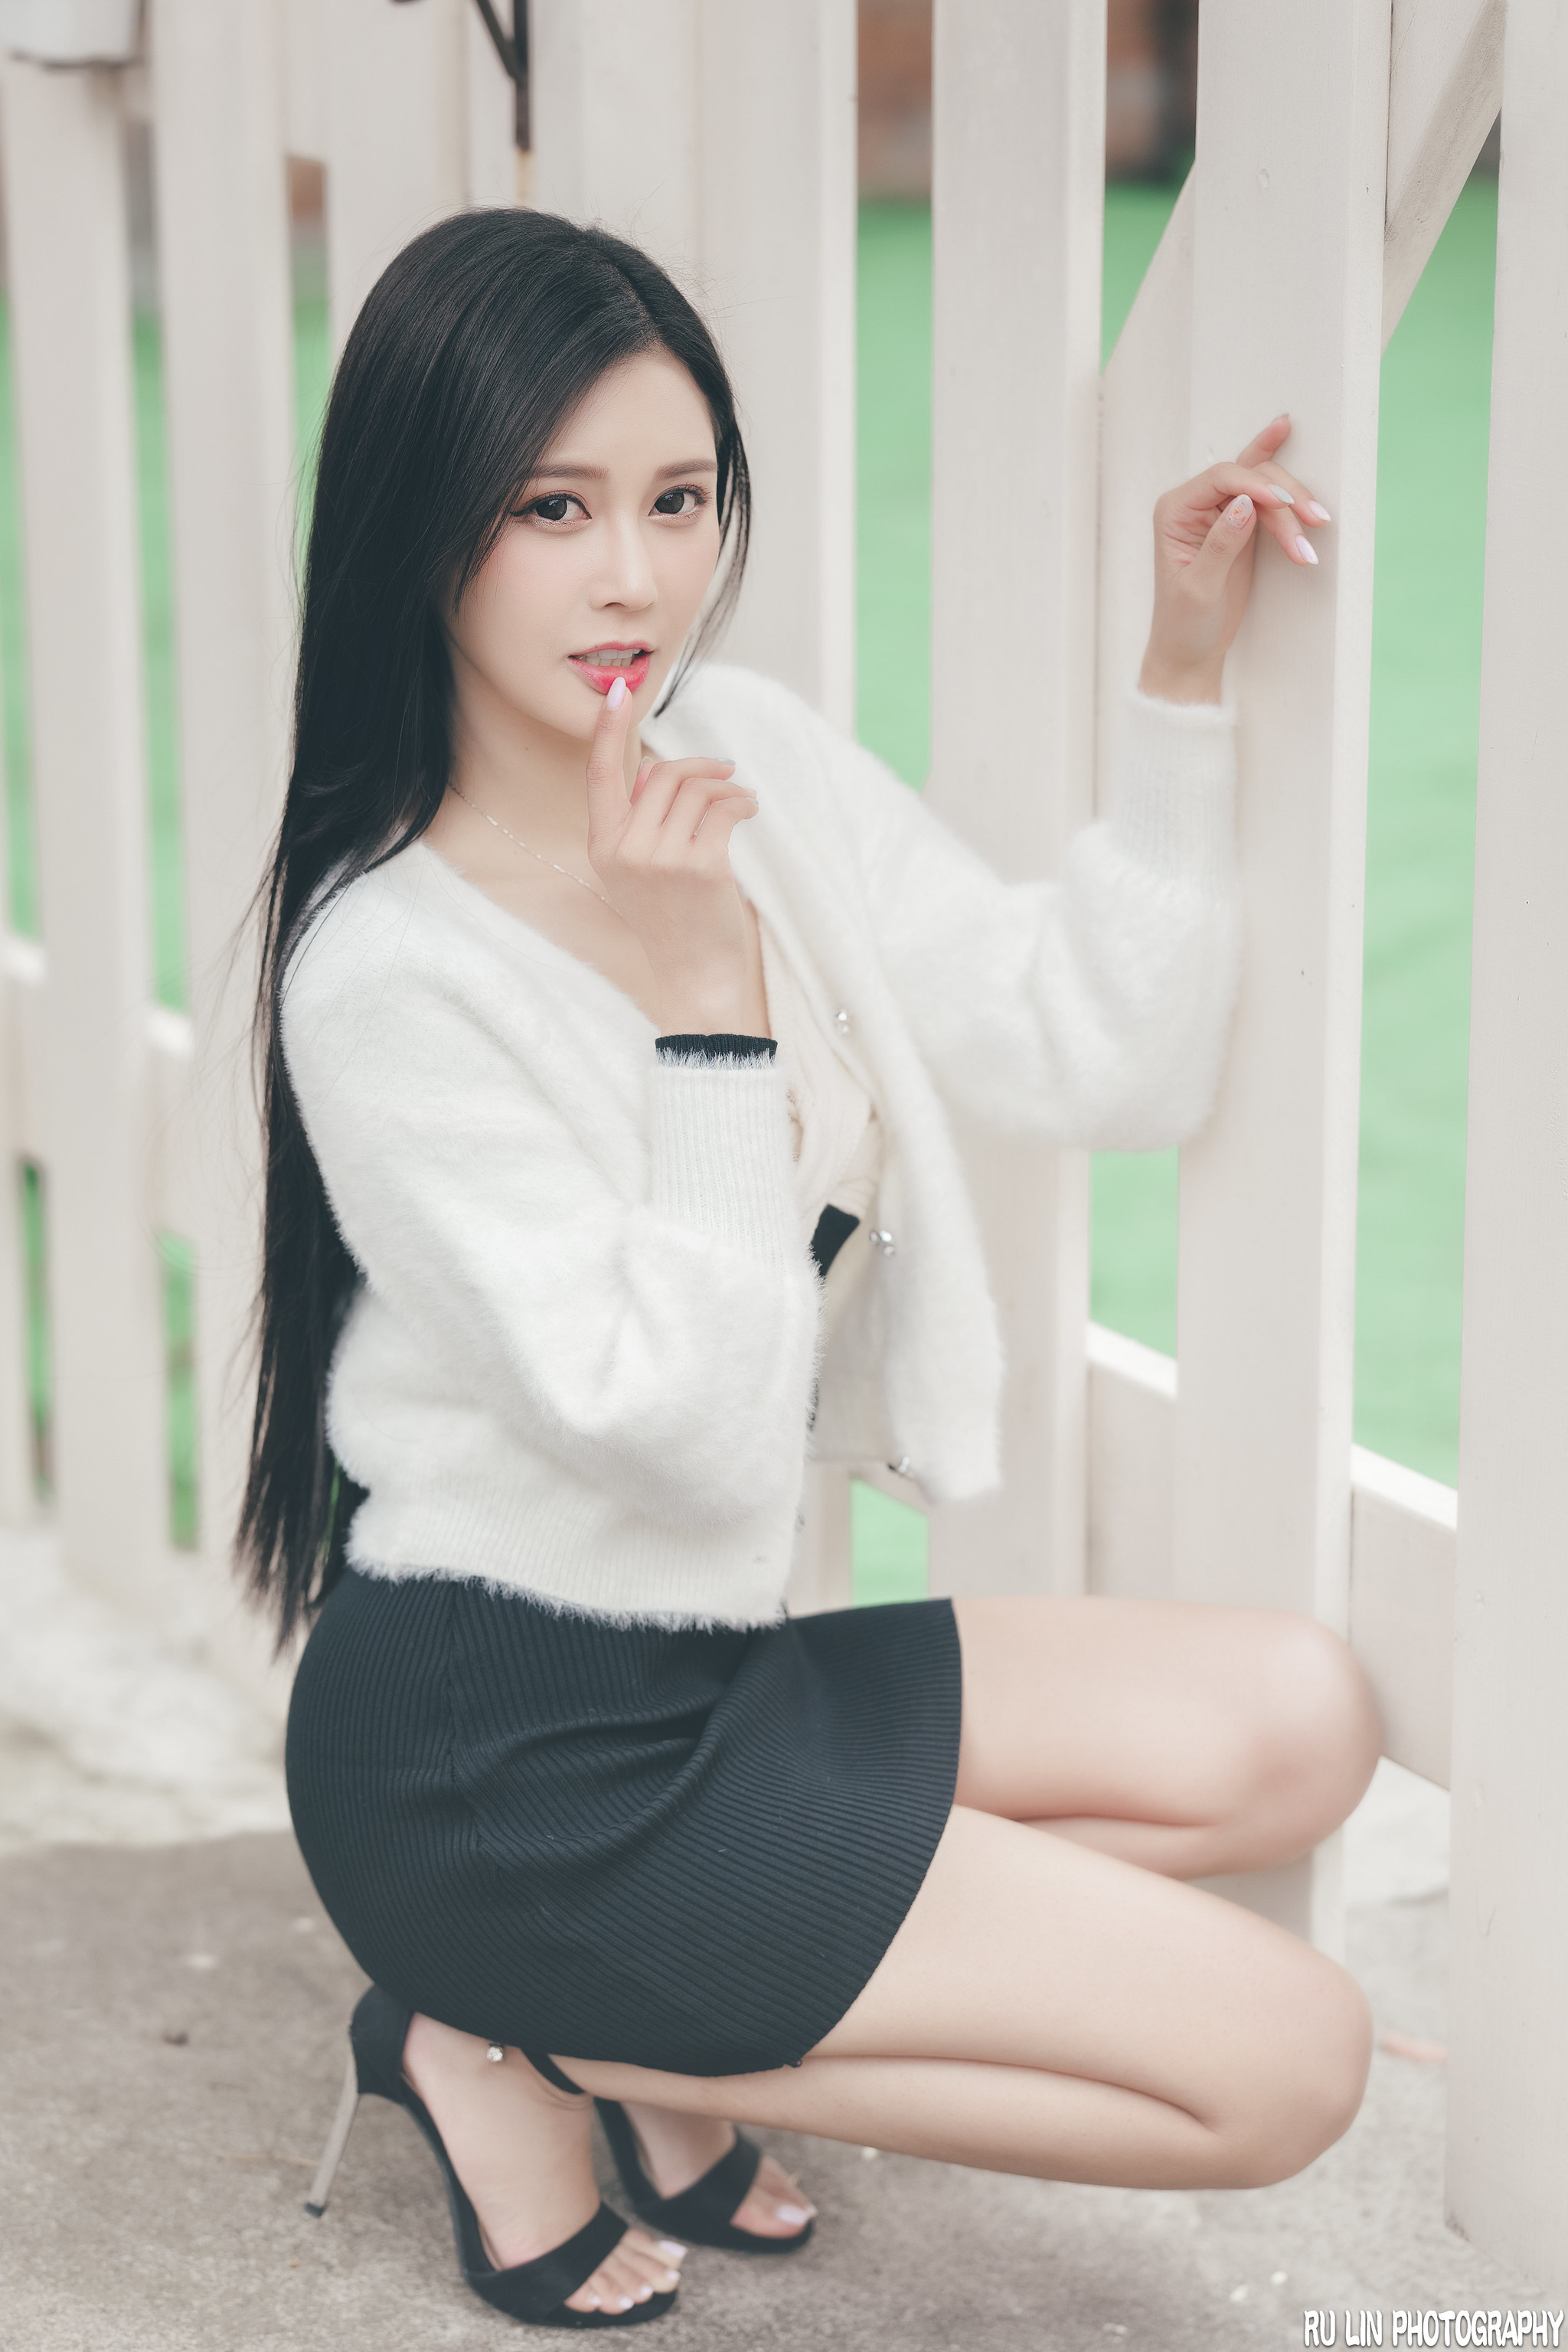 Ru Lin Women Asian Dark Hair Long Hair Straight Hair White Clothing Skirt Shoes Fence Finger On Lips 2048x3072